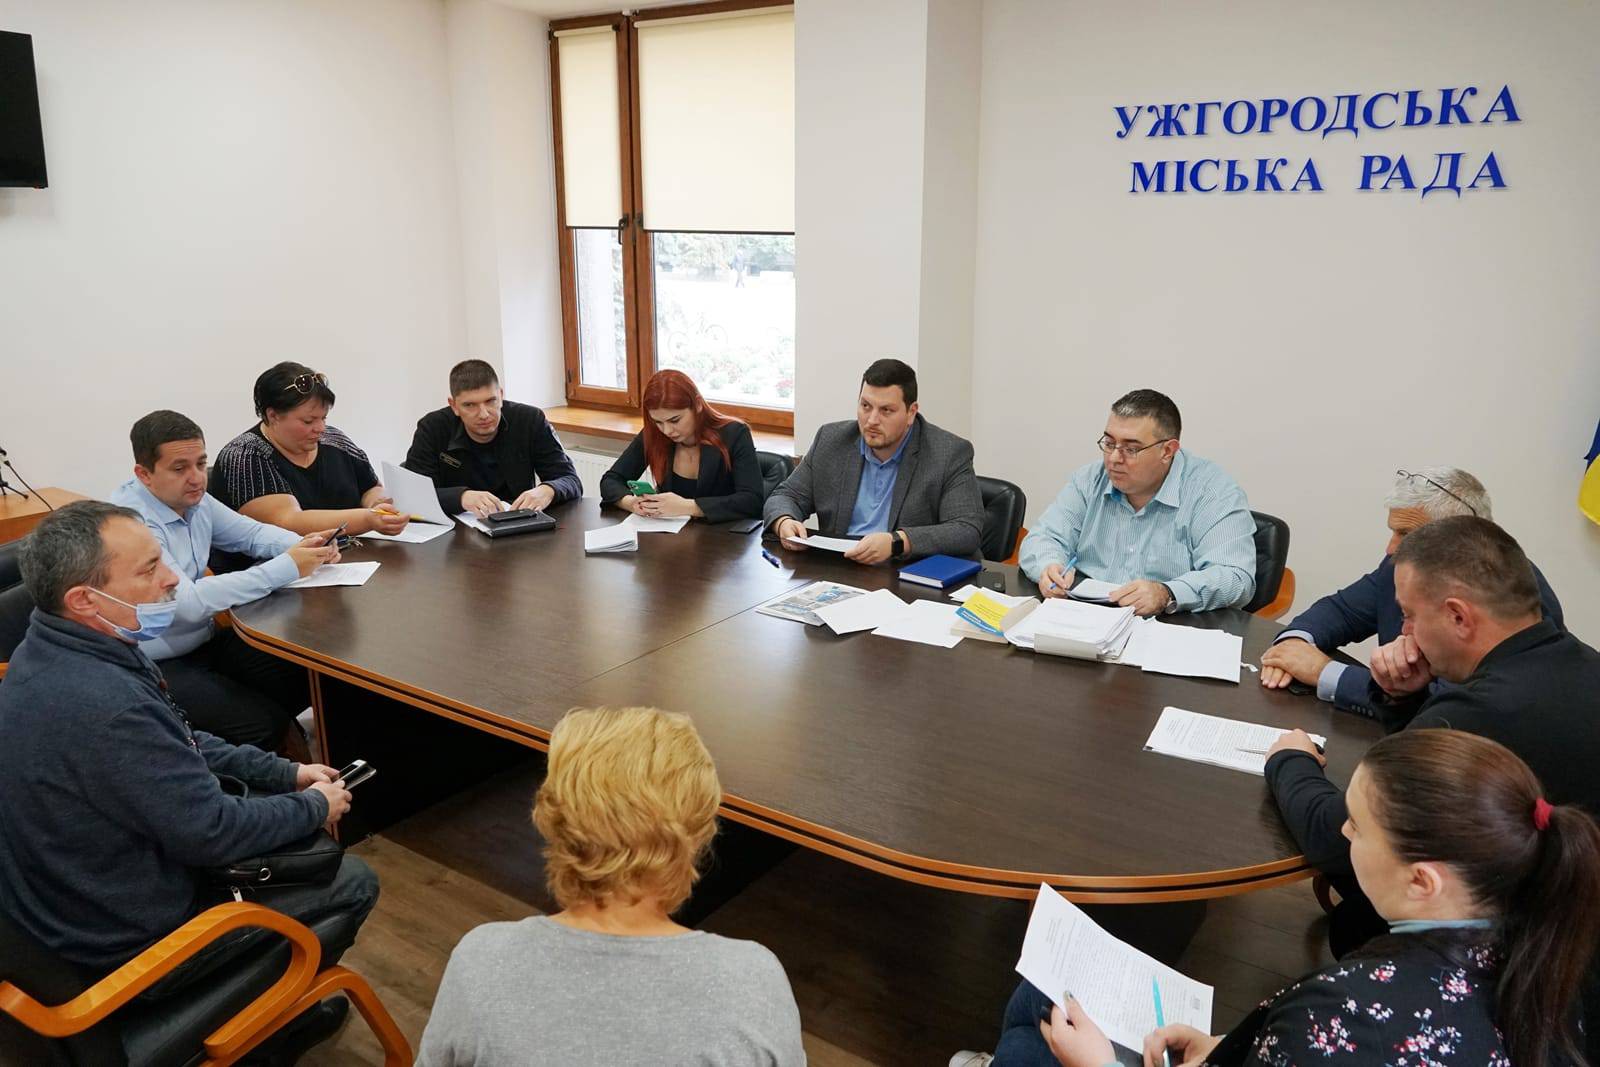 Понад пів сотні протоколів розглянули на засіданні адміністративної комісії в Ужгородській міській раді